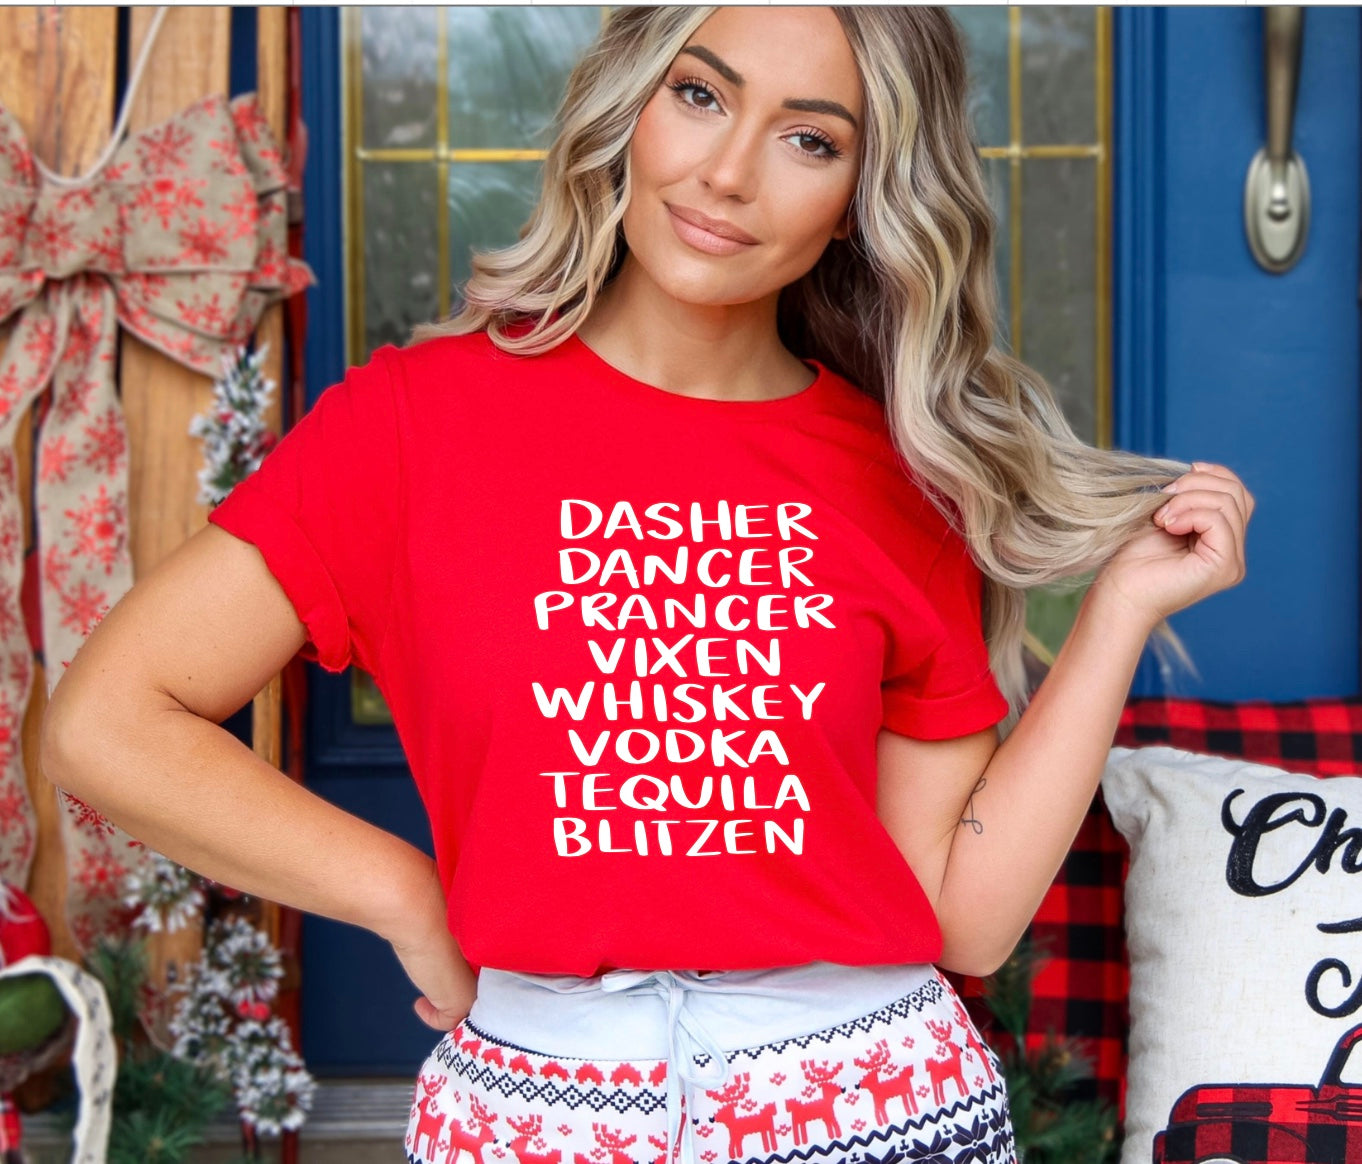 Dasher dancer prancer vixen whiskey vodka tequila blitzen t-shirt in red